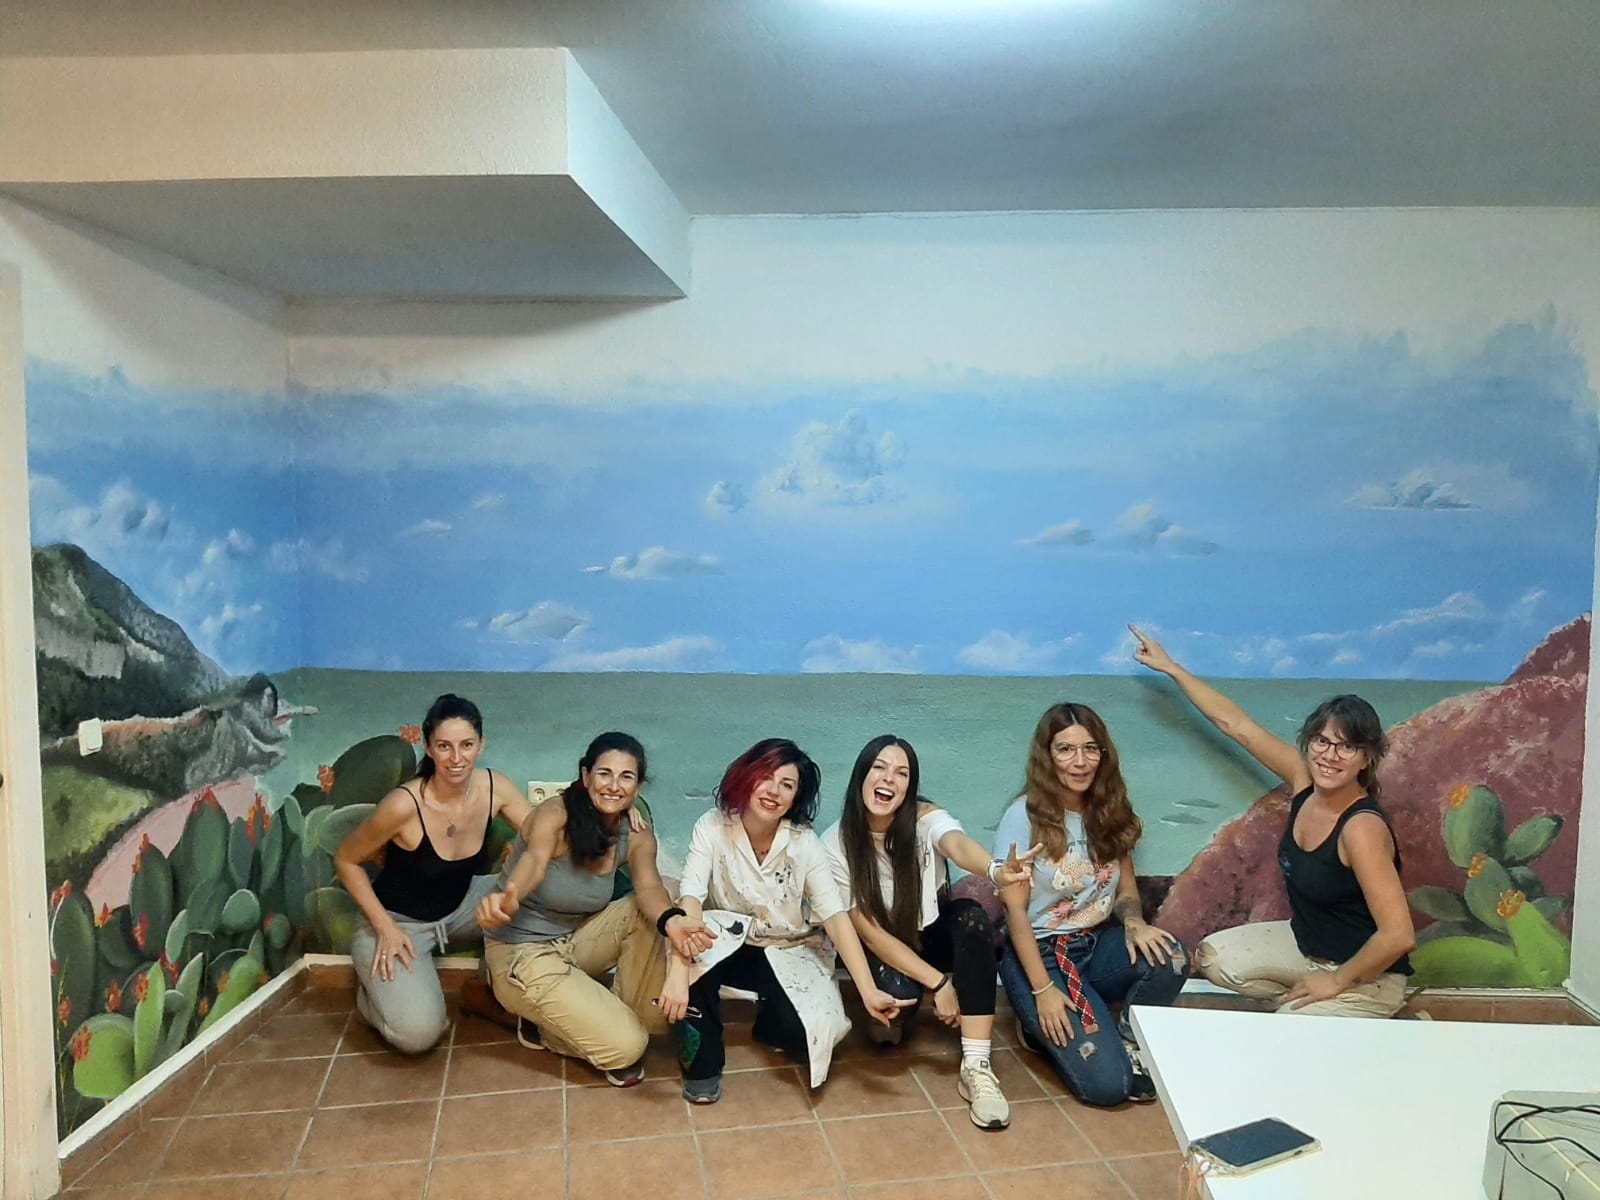  Las delegaciones de Fundación AFIM en Valencia y Málaga, decoradas con pinturas murales